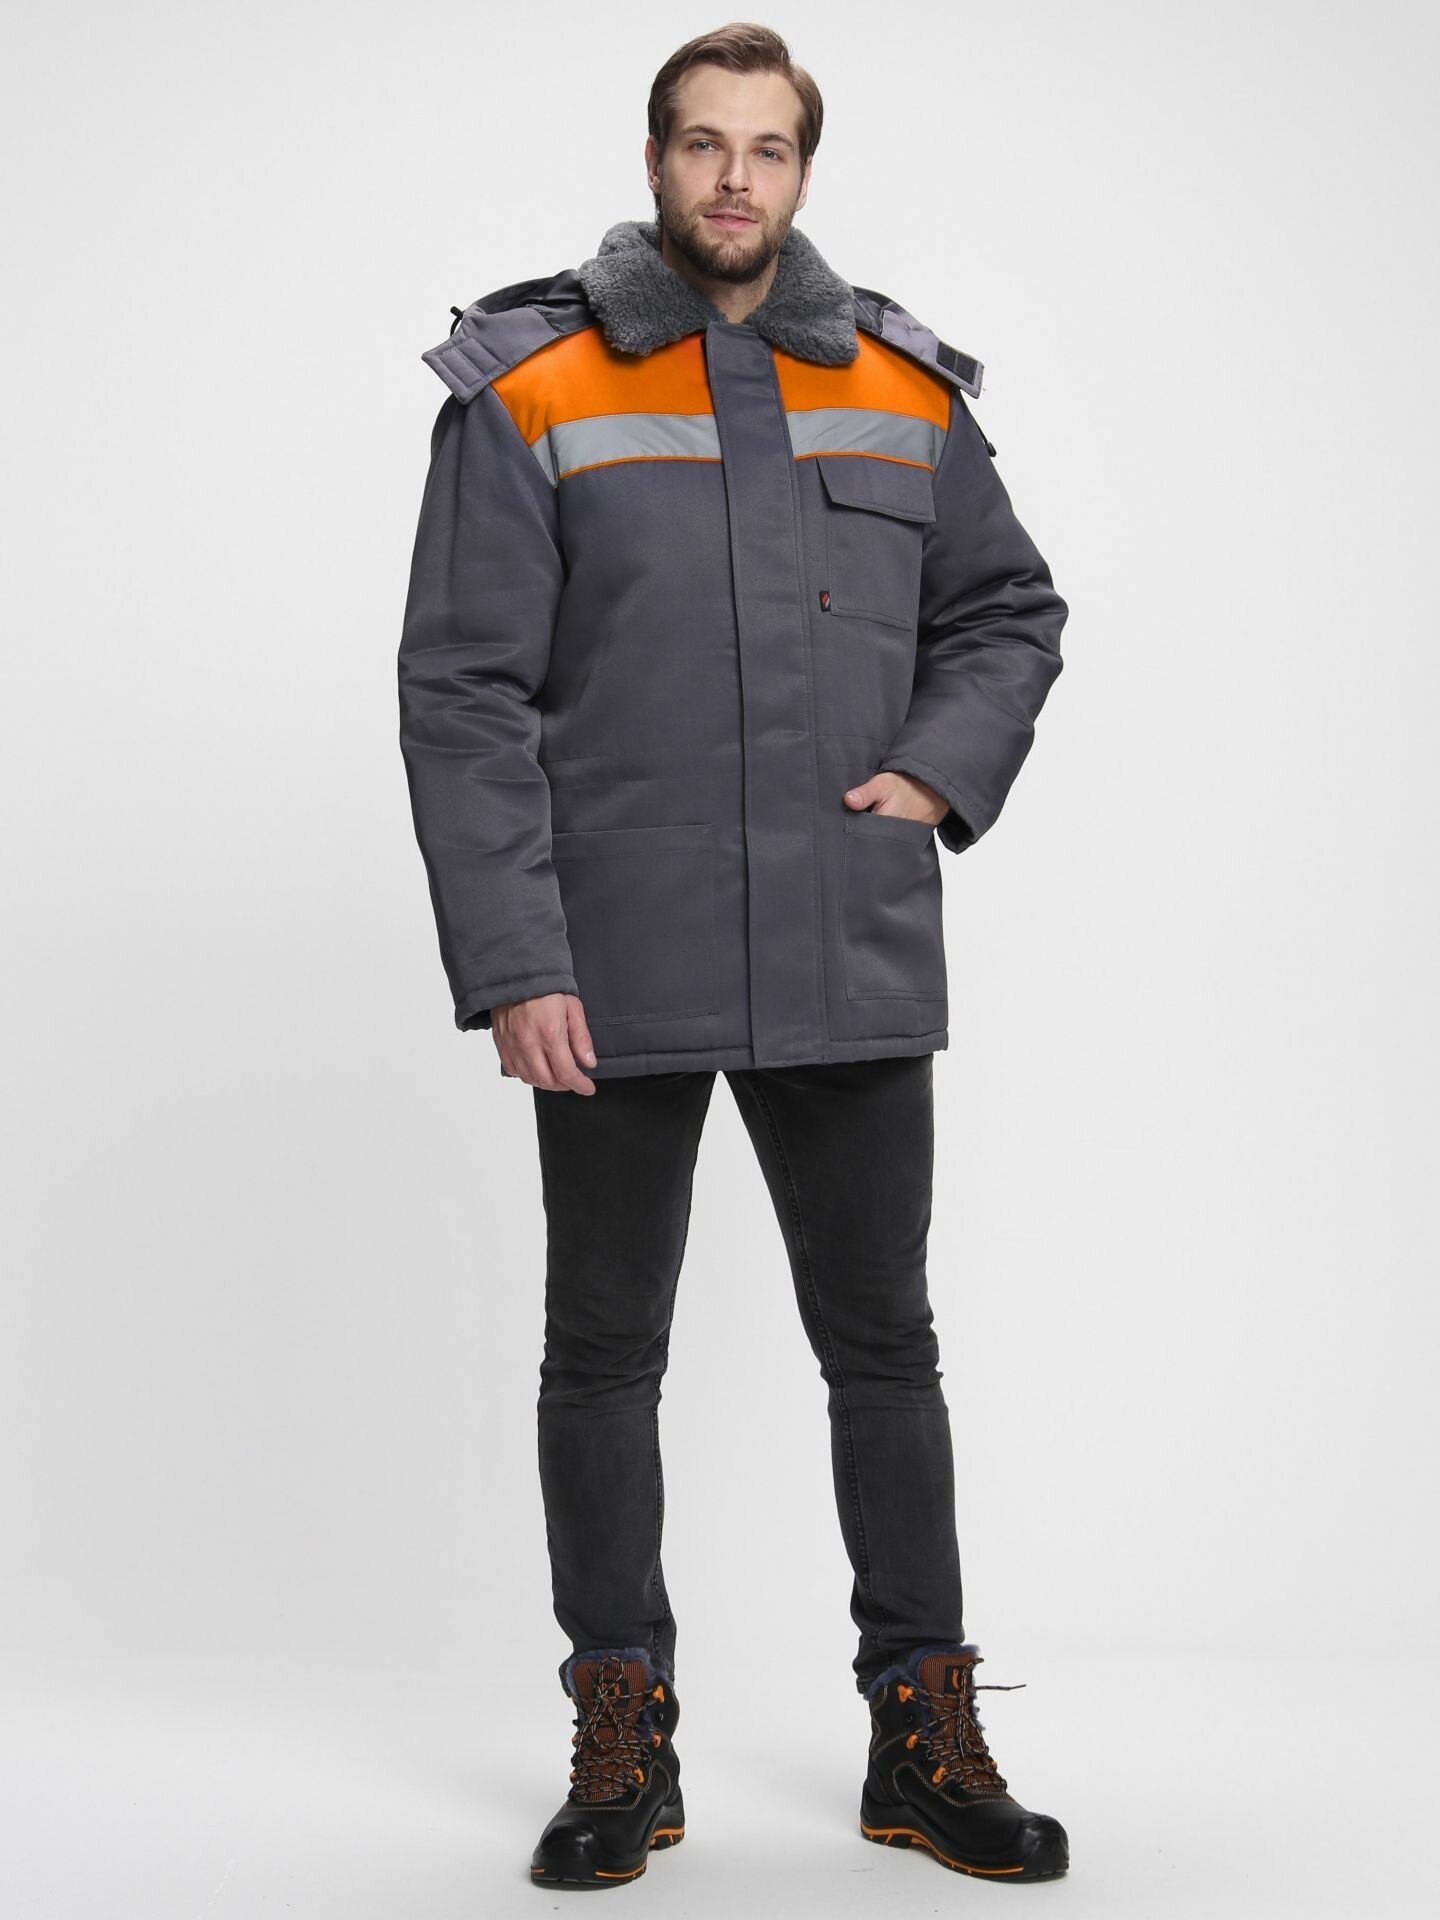 Куртка рабочая зимняя Бригада NEW, т. серый/оранжевый (56-58; 182-188)